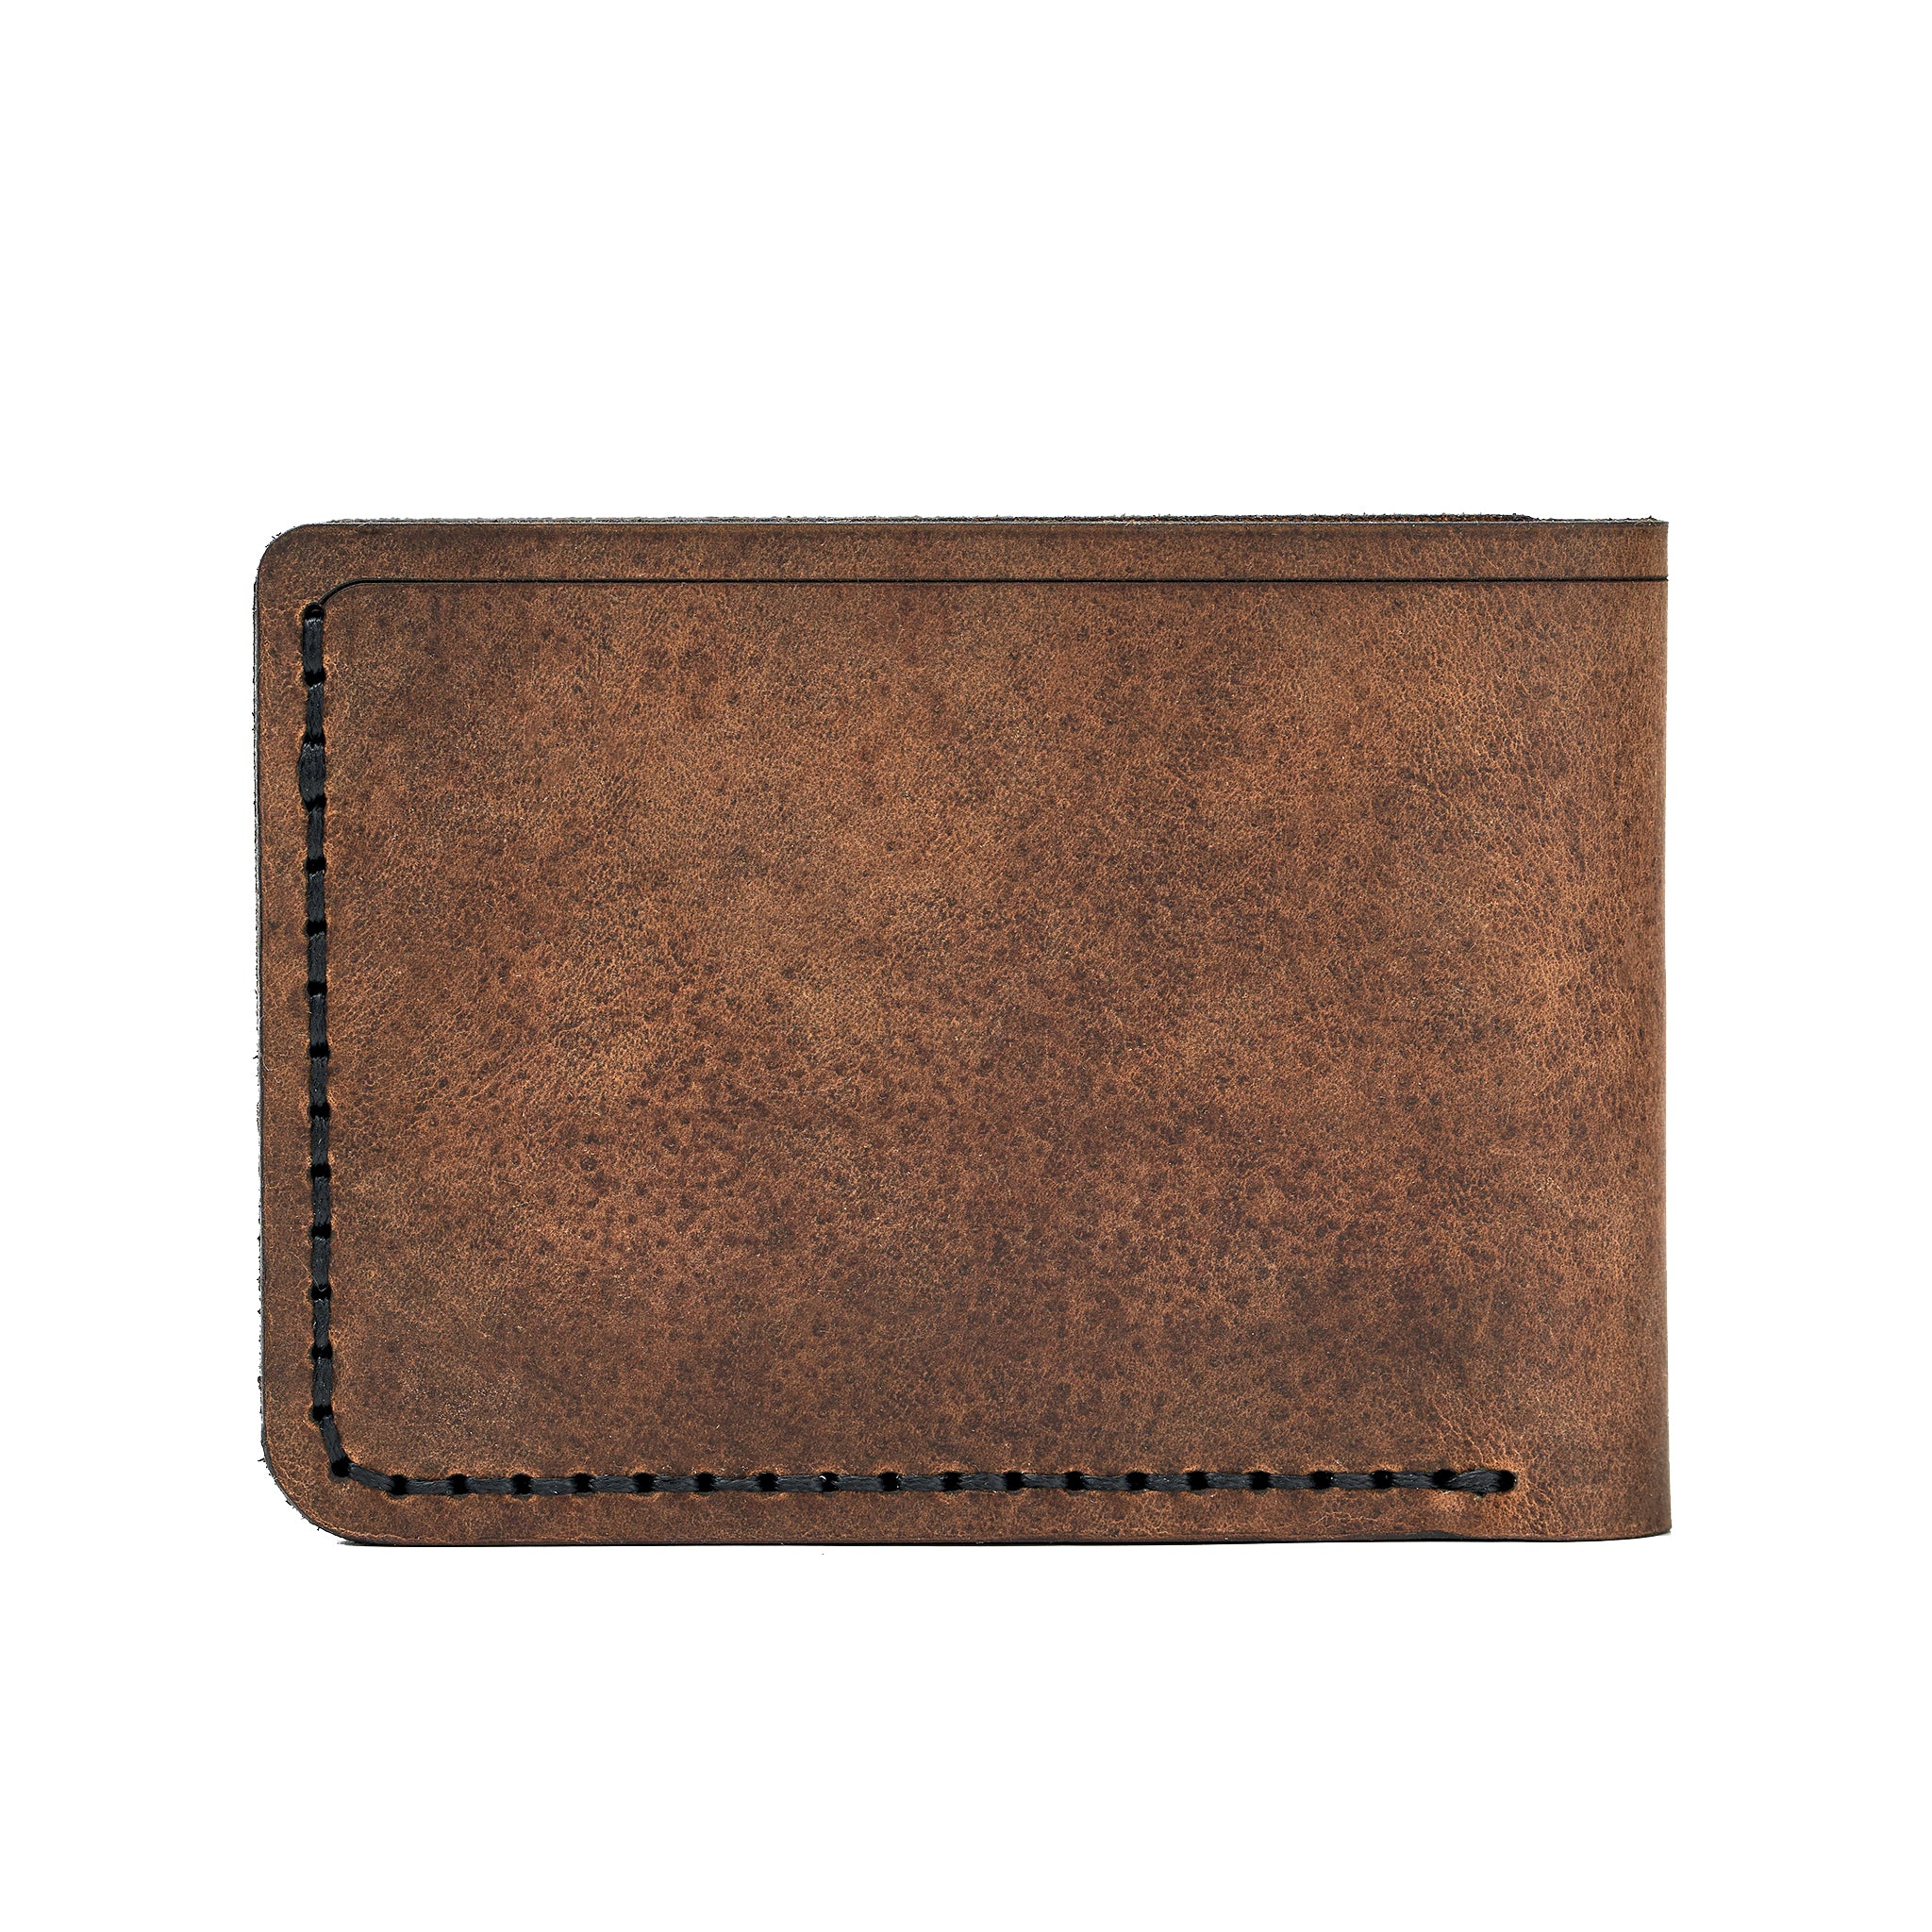 Handmade Men's Wallet 4 Card Slots Tan Pull-Up 31707860304023